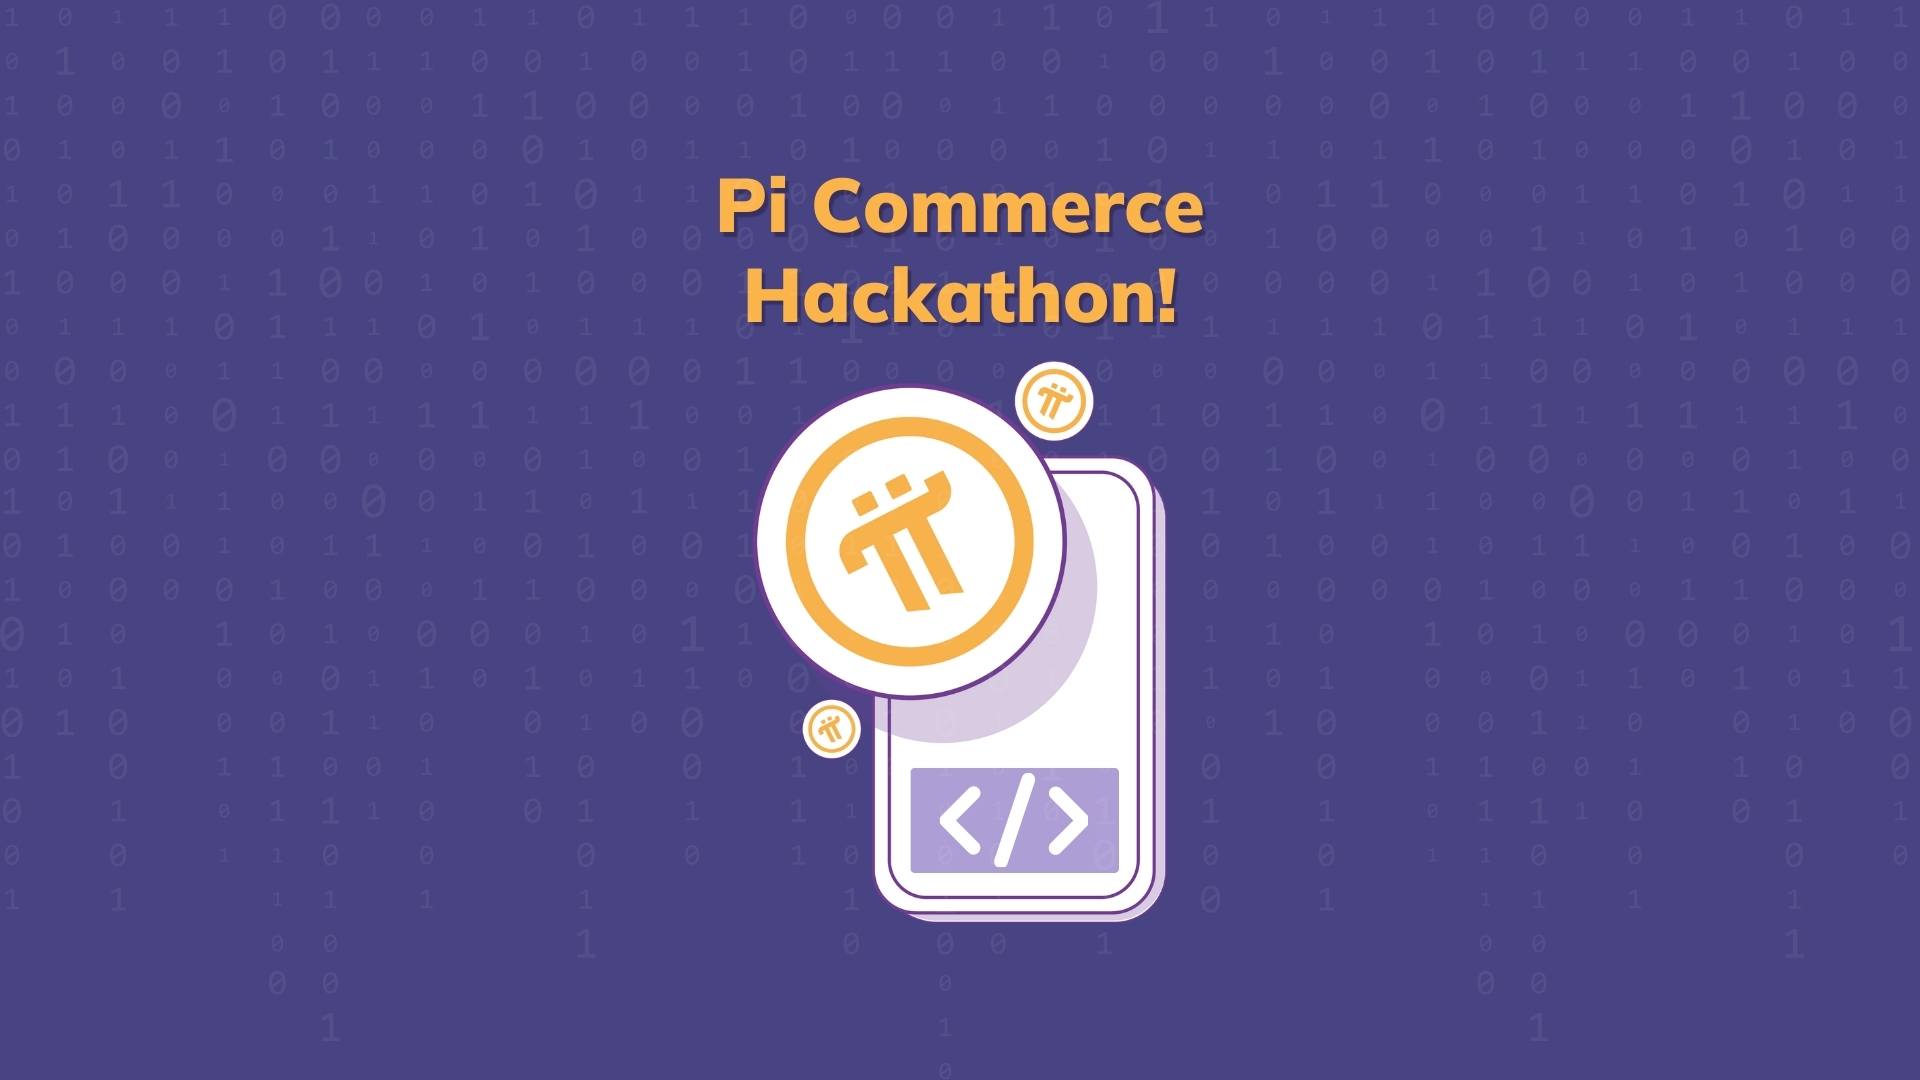 Pi Commerce Hackathon Announcement